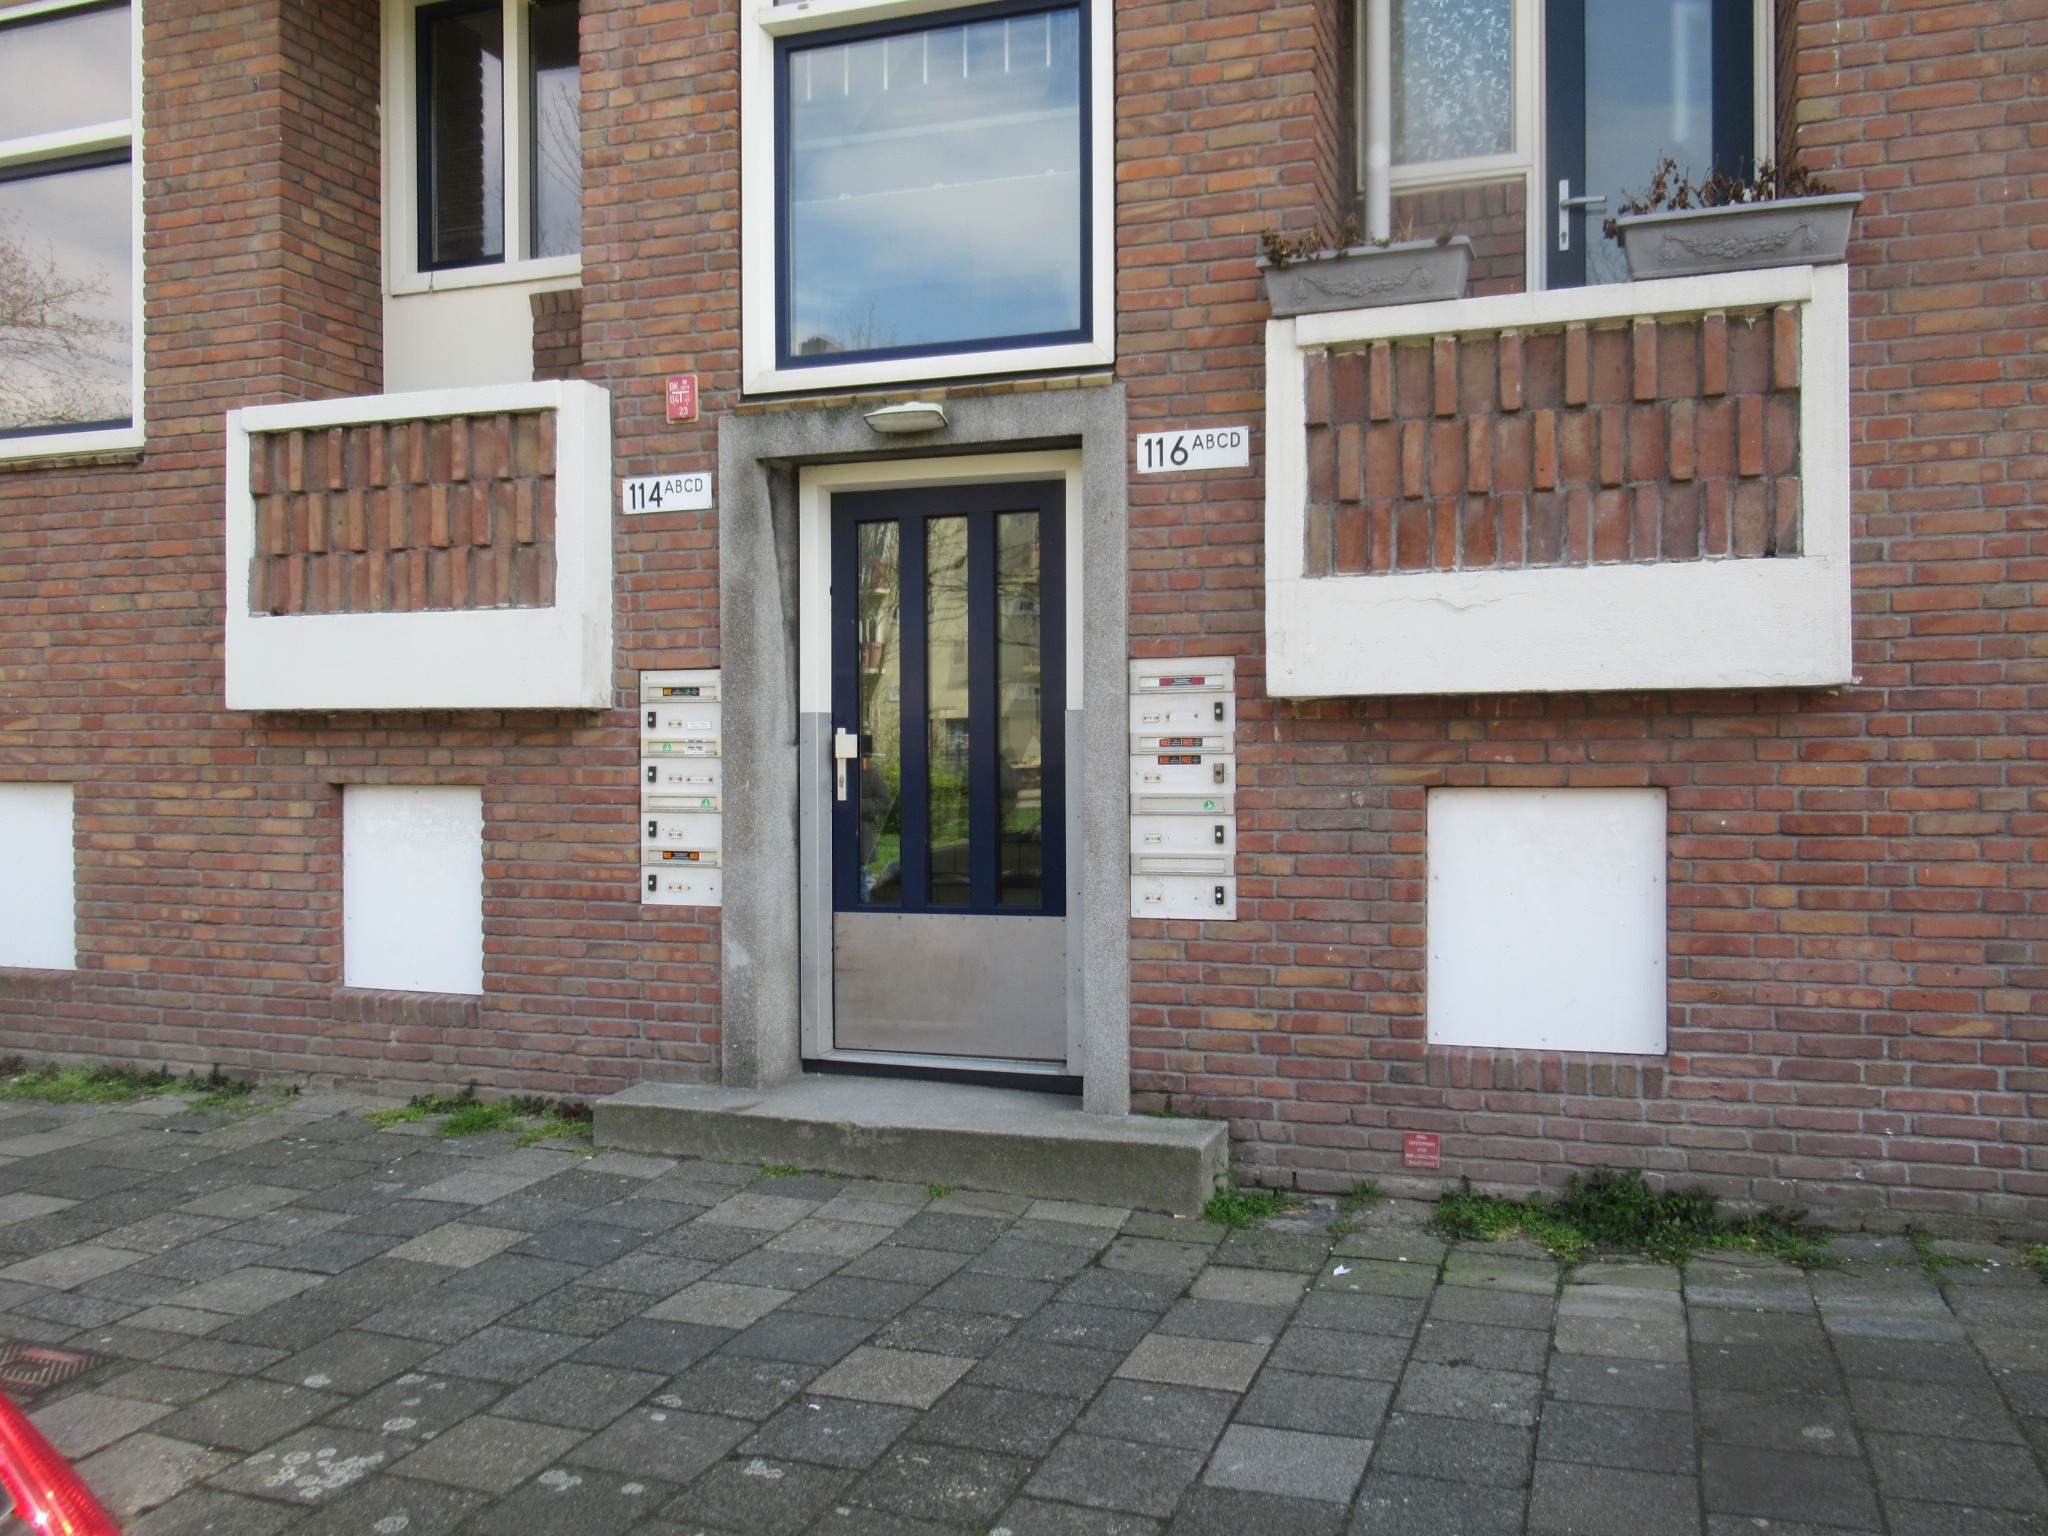 Kamerverhuurpand - Rotterdam - Hogenbanweg 116 D